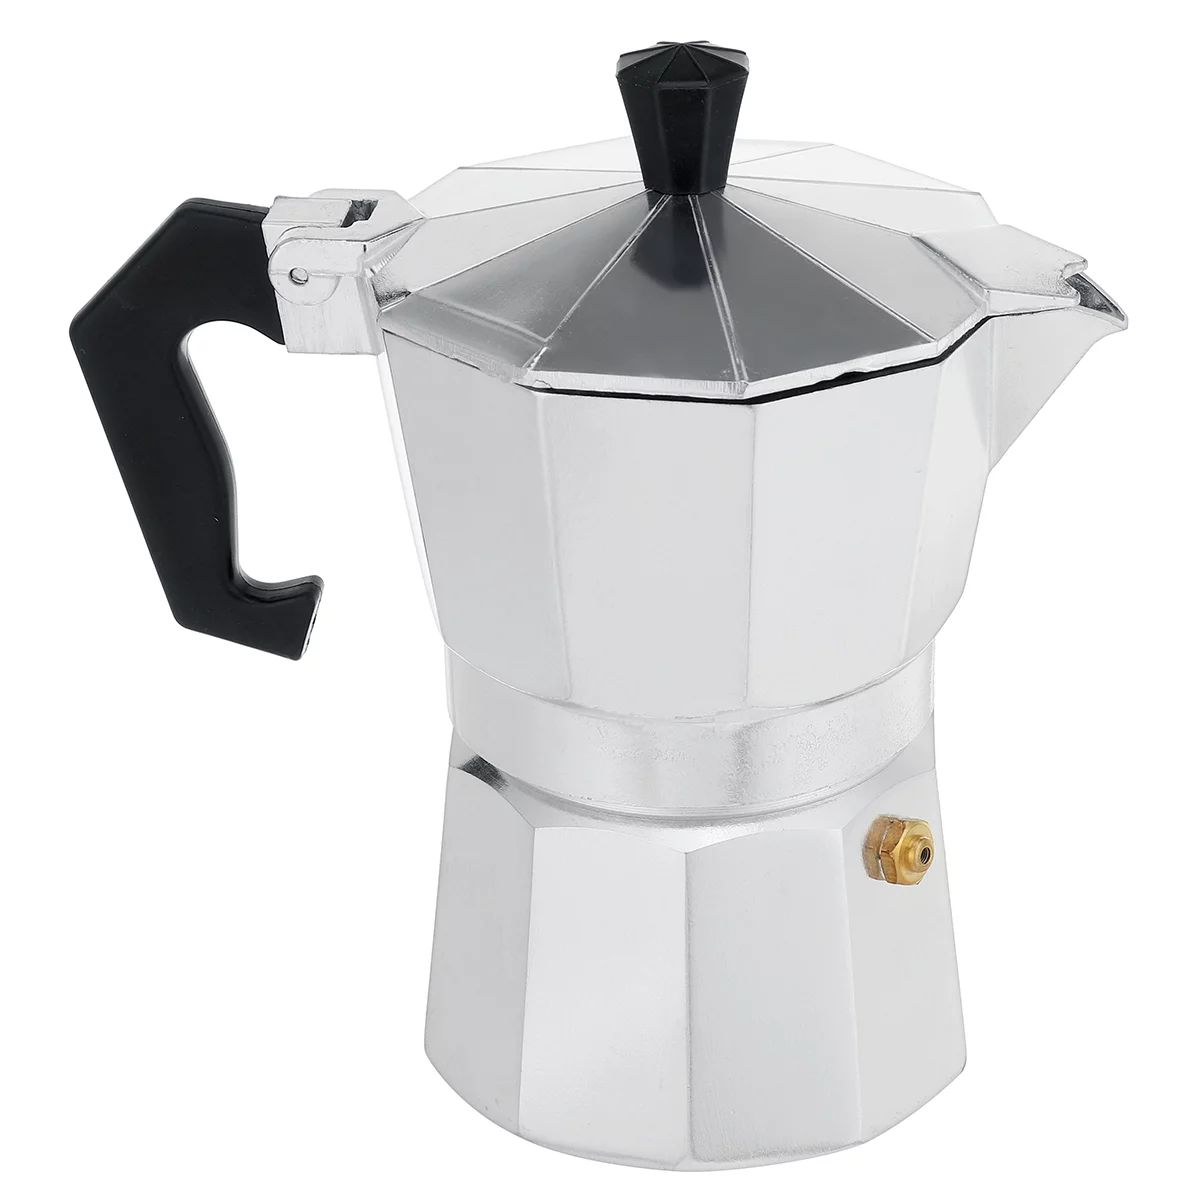 3/6/9/12 Cup Moka Pot (Mocha Pot) - Stovetop Espresso Maker - The Perfect Stove Top Italian Coffe... | Walmart (US)